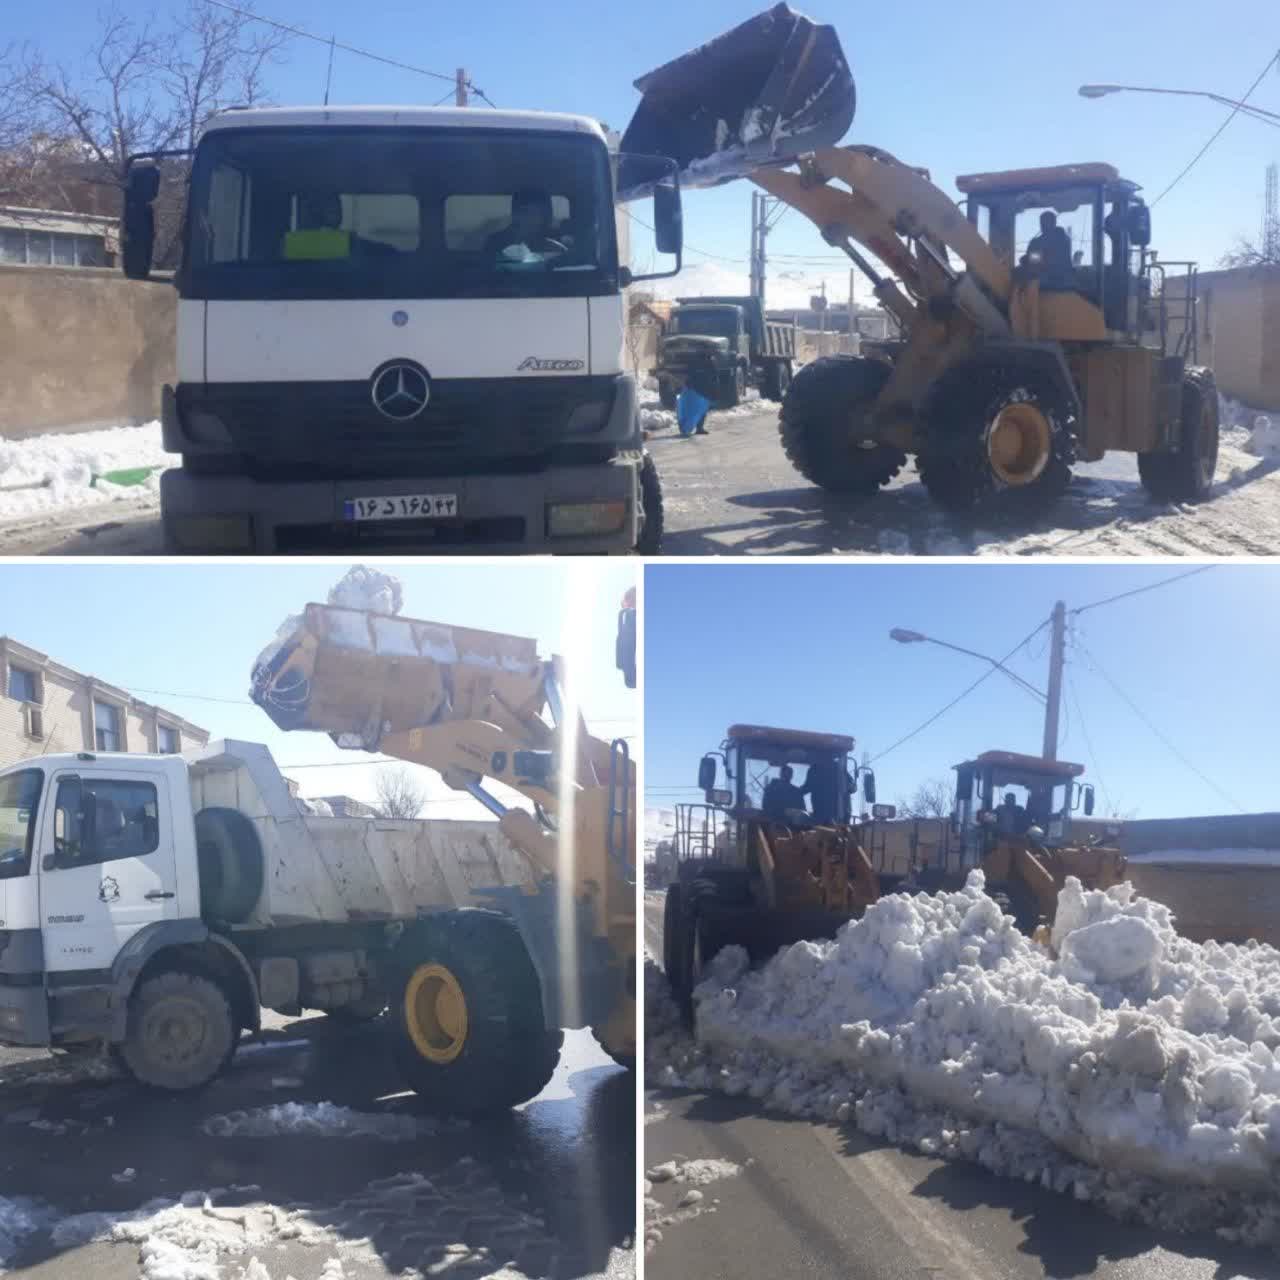 اعزام راننده با خودروی کامیون کمپرسی شهرداری وزوان به شهر داران در راستای کمک رسانی و همیاری در آزادسازی و پاکسازی معابر شهری با توجه به بارش برف سنگین در این منطقه